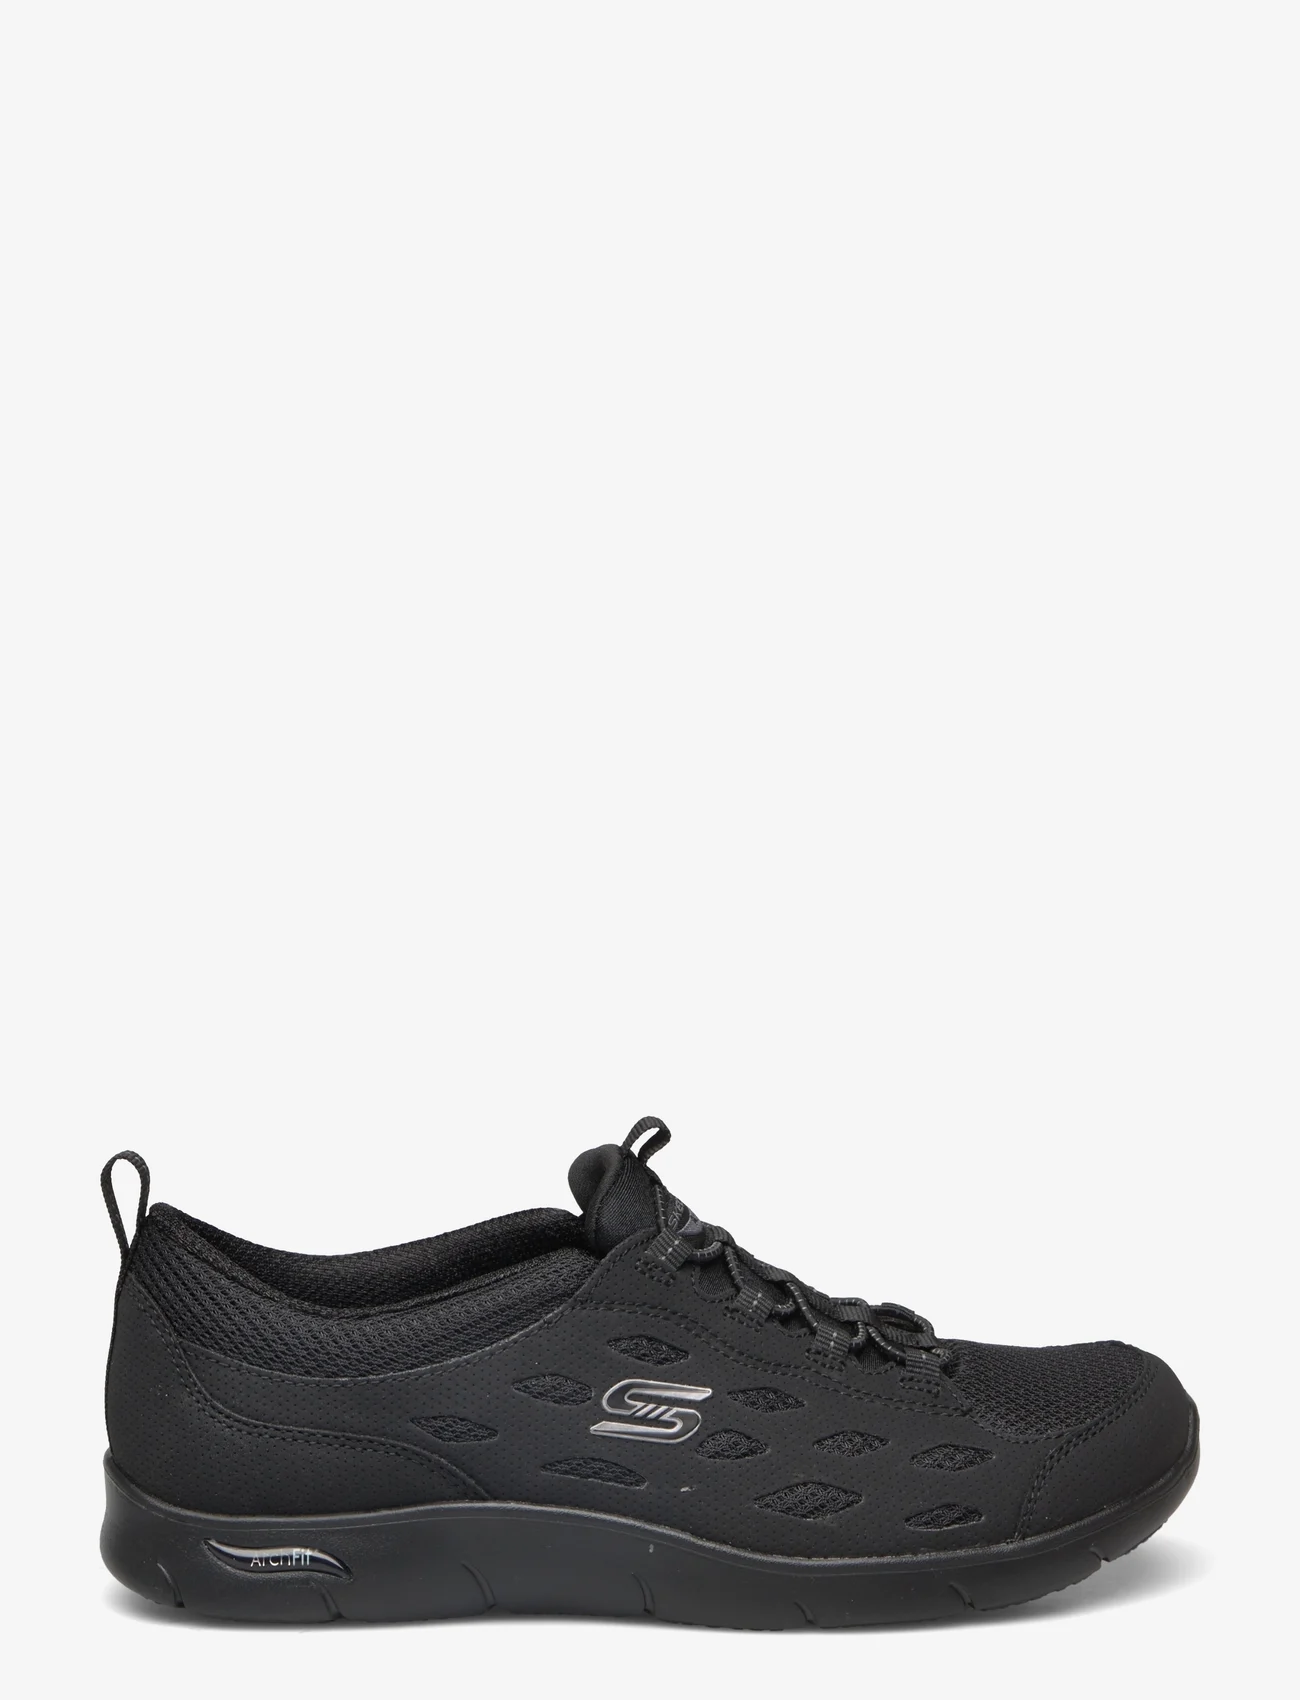 Skechers - Womens Arch Fit - Refine - niedrige sneakers - bbk black - 1